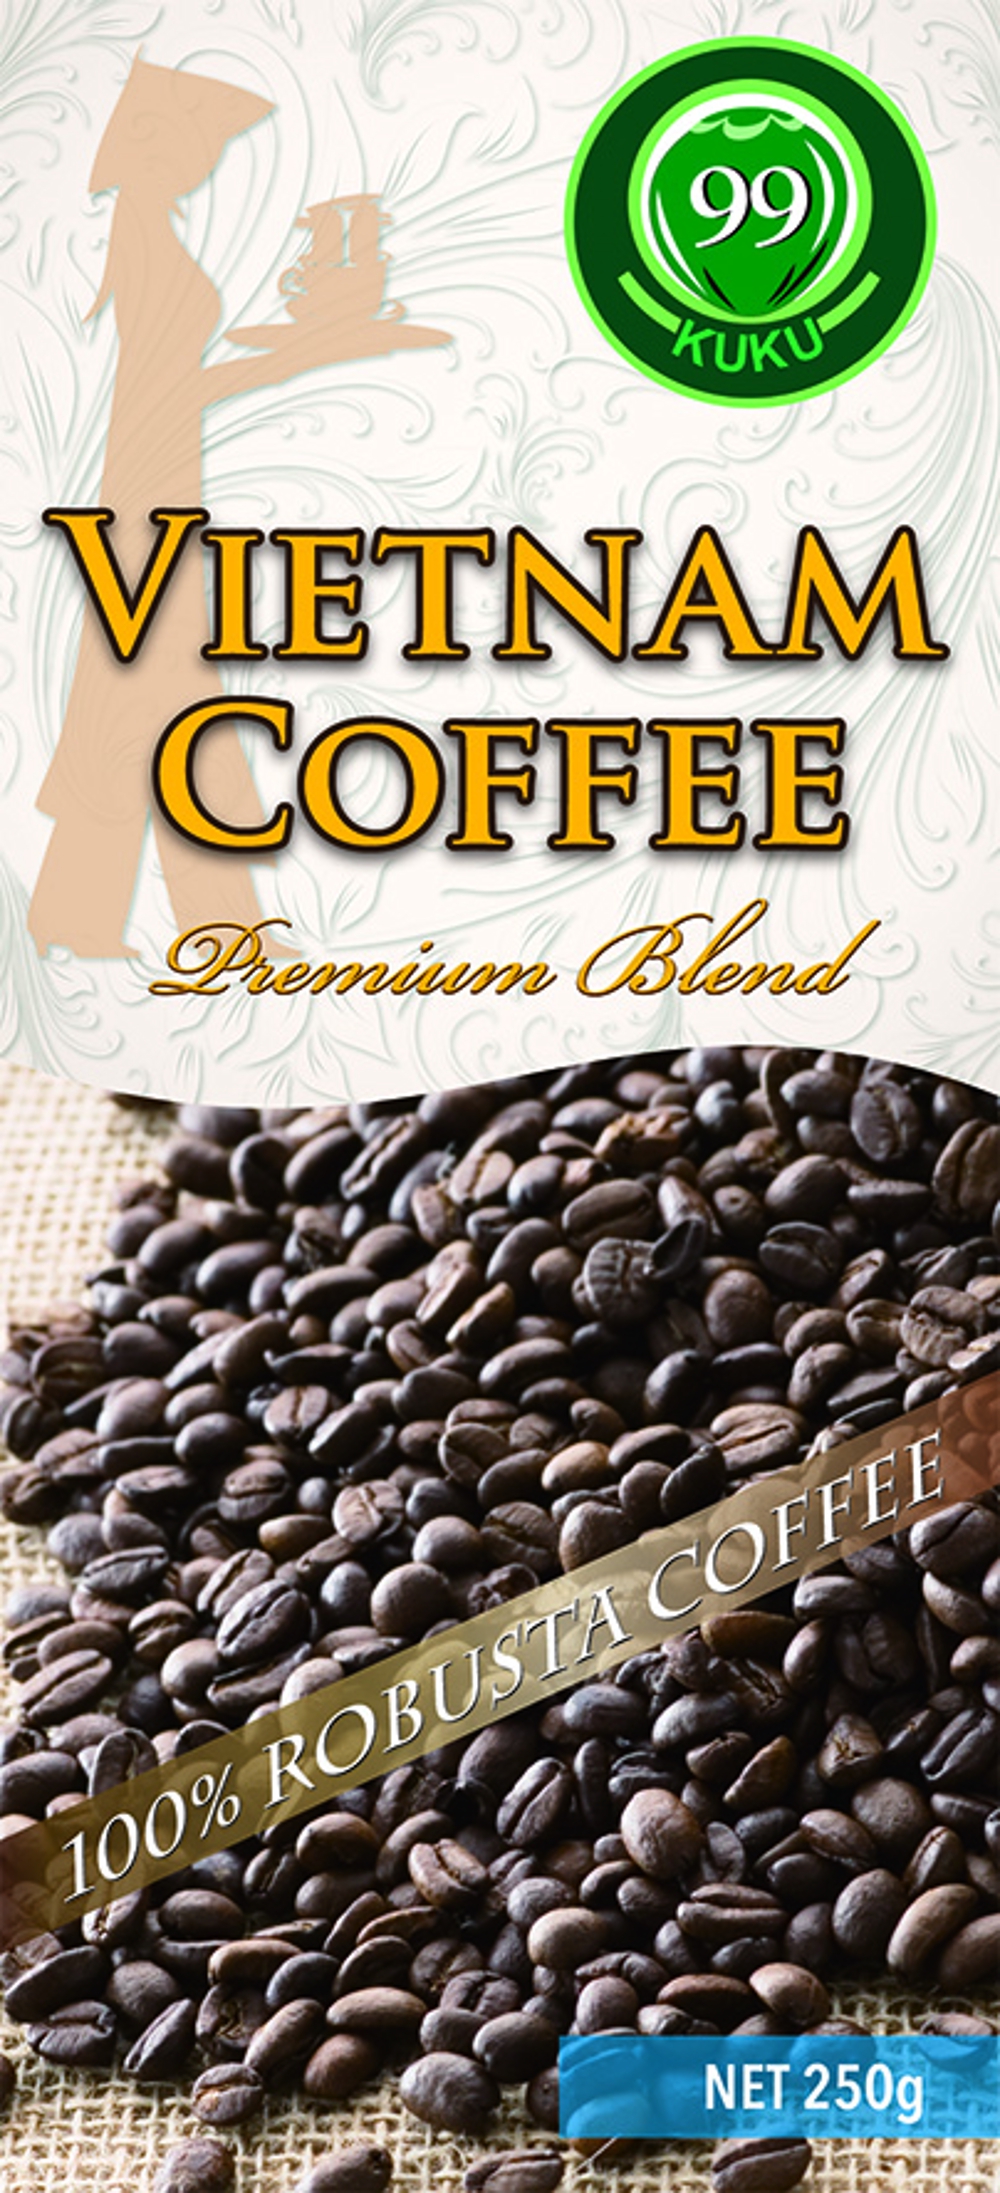 ベトナムコーヒーパッケージのデザイン